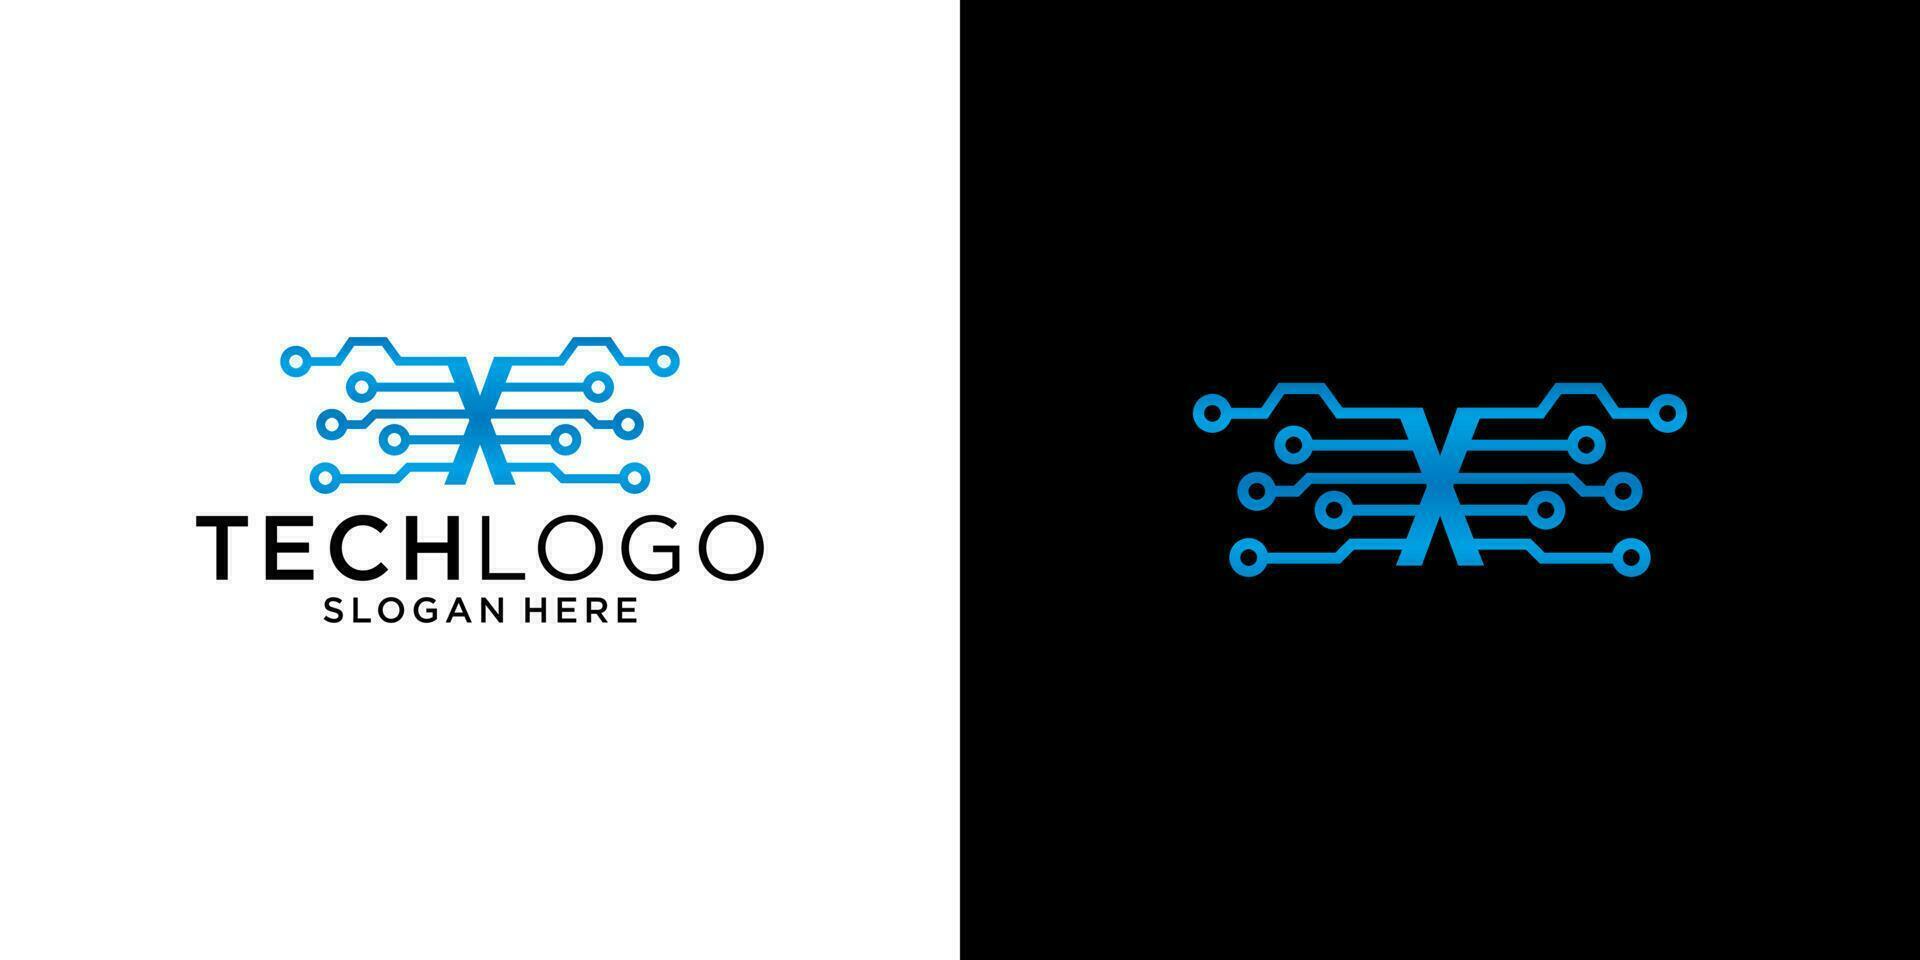 x plantilla de diseño de tecnología de logotipo vector